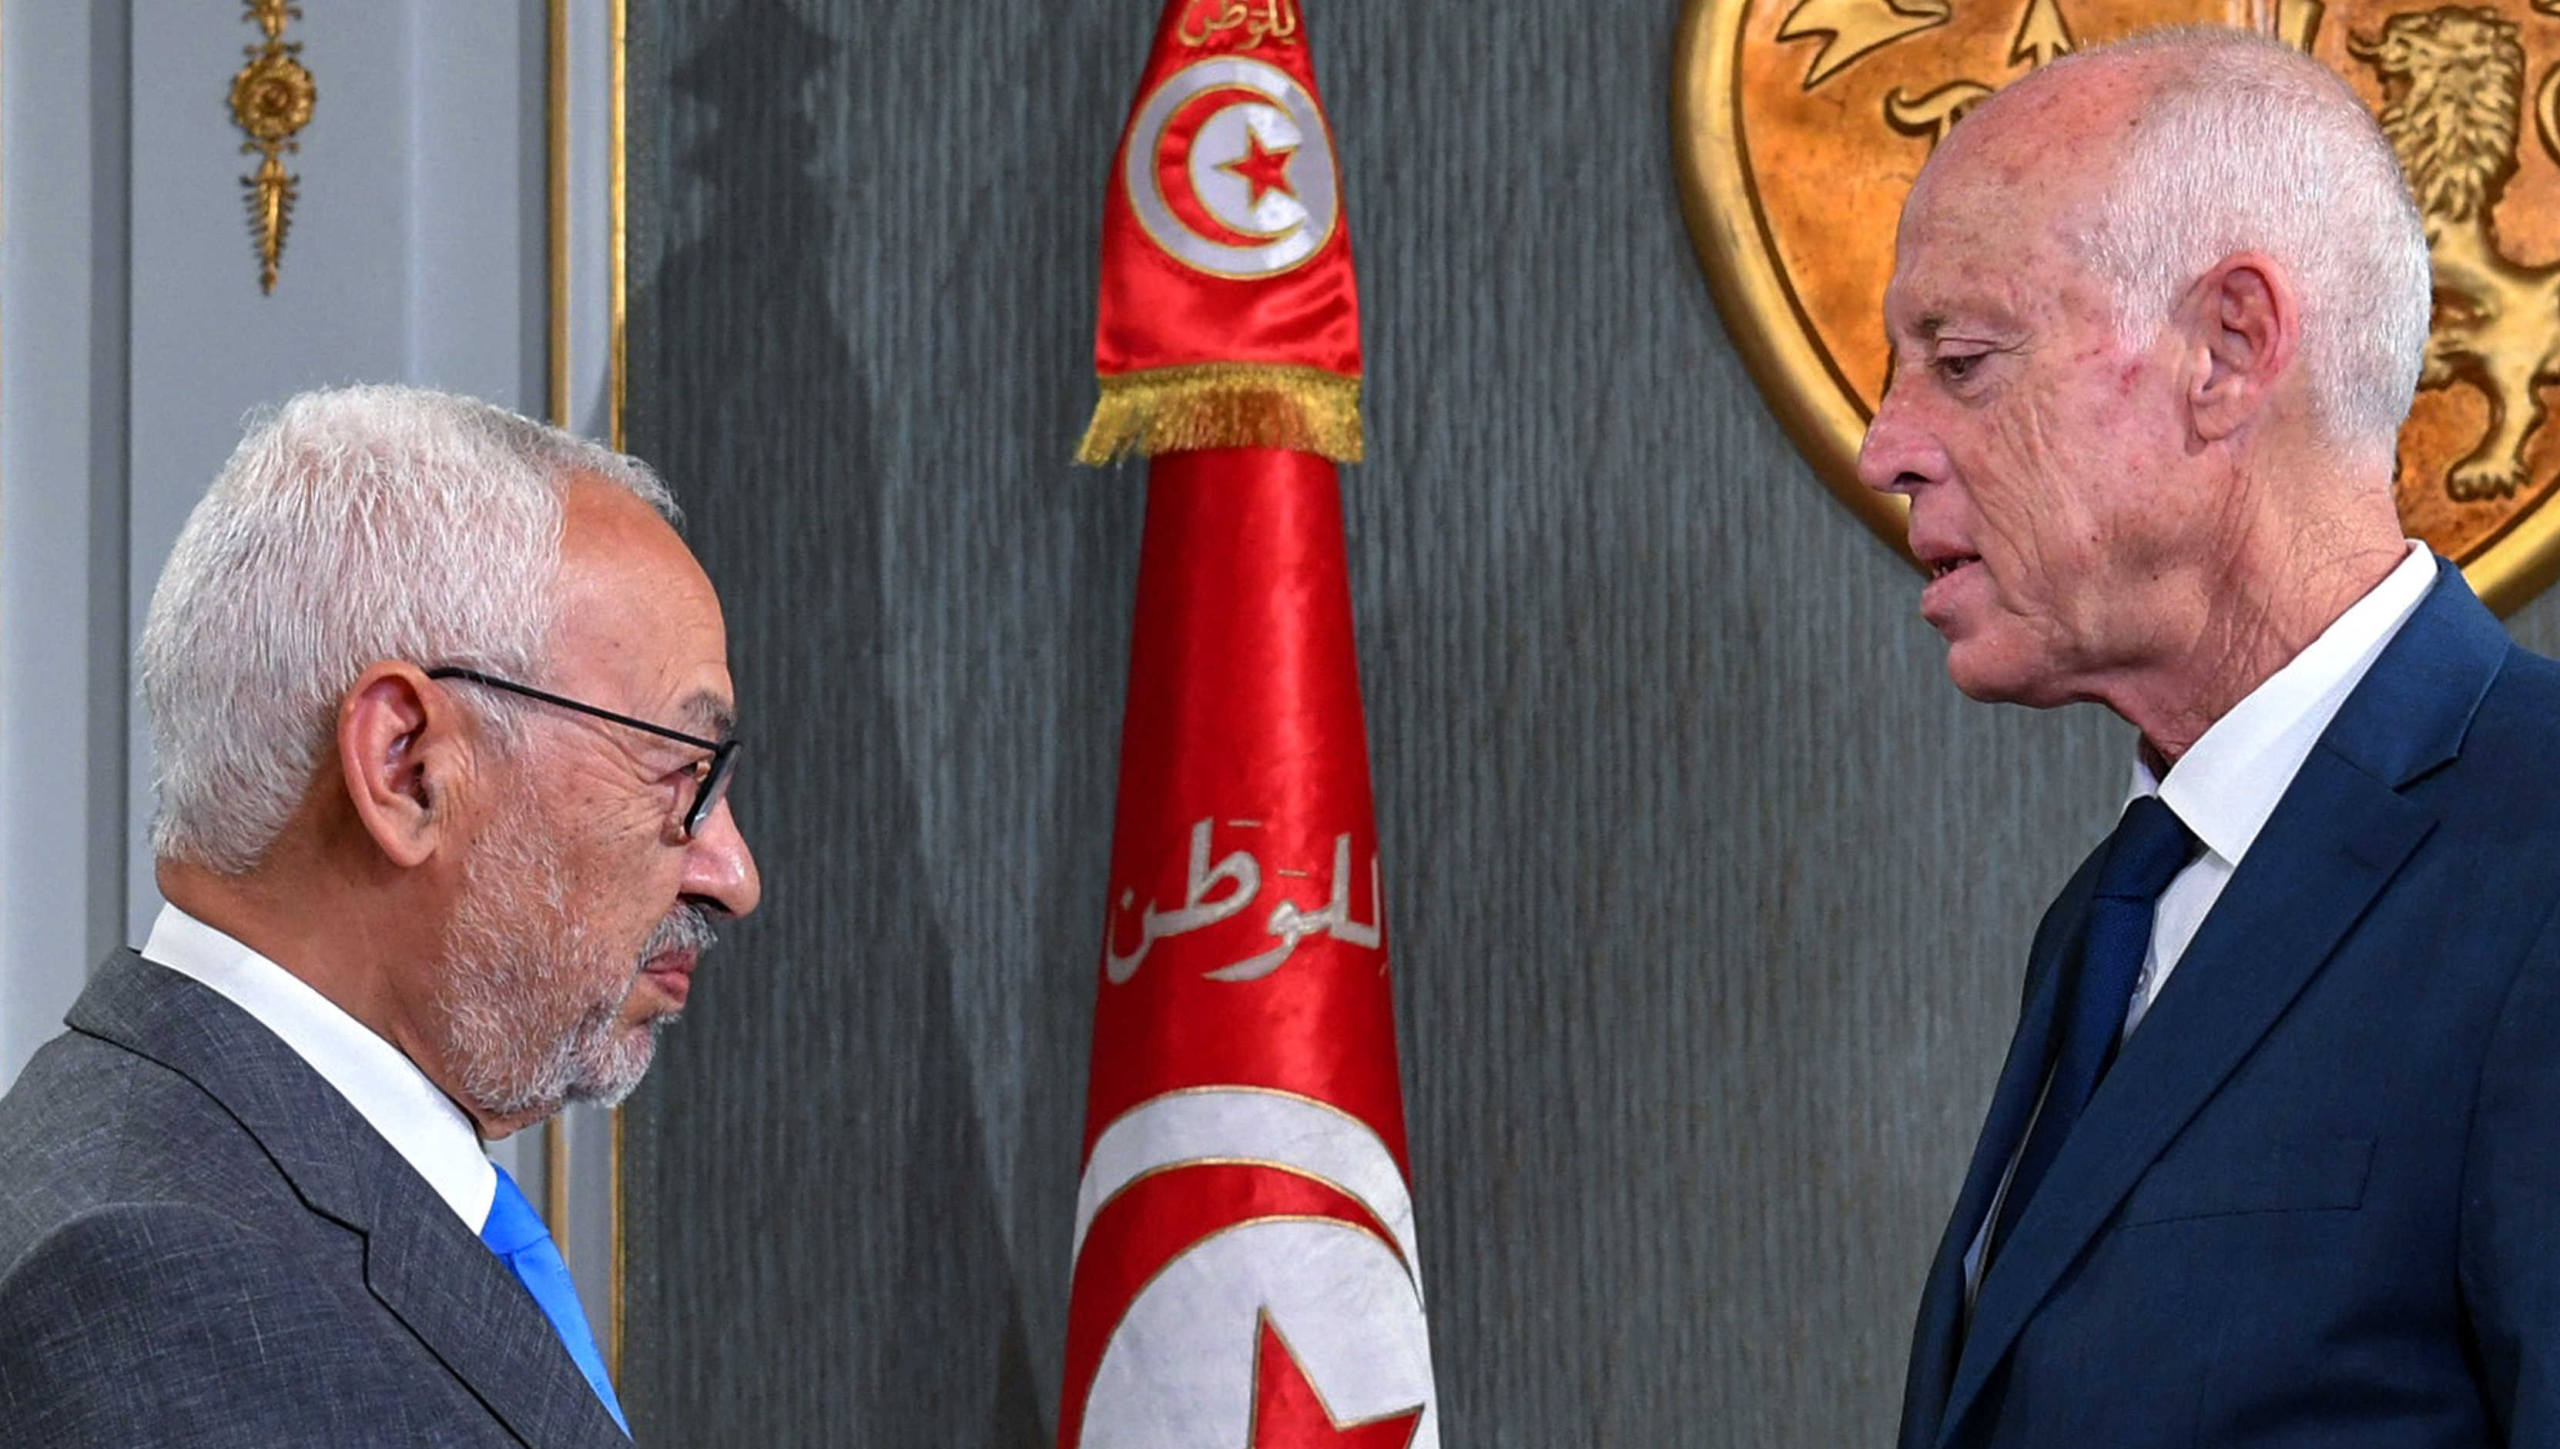 بايدن يحض الرئيس التونسي على تسريع العودة إلى مسار الديمقراطية